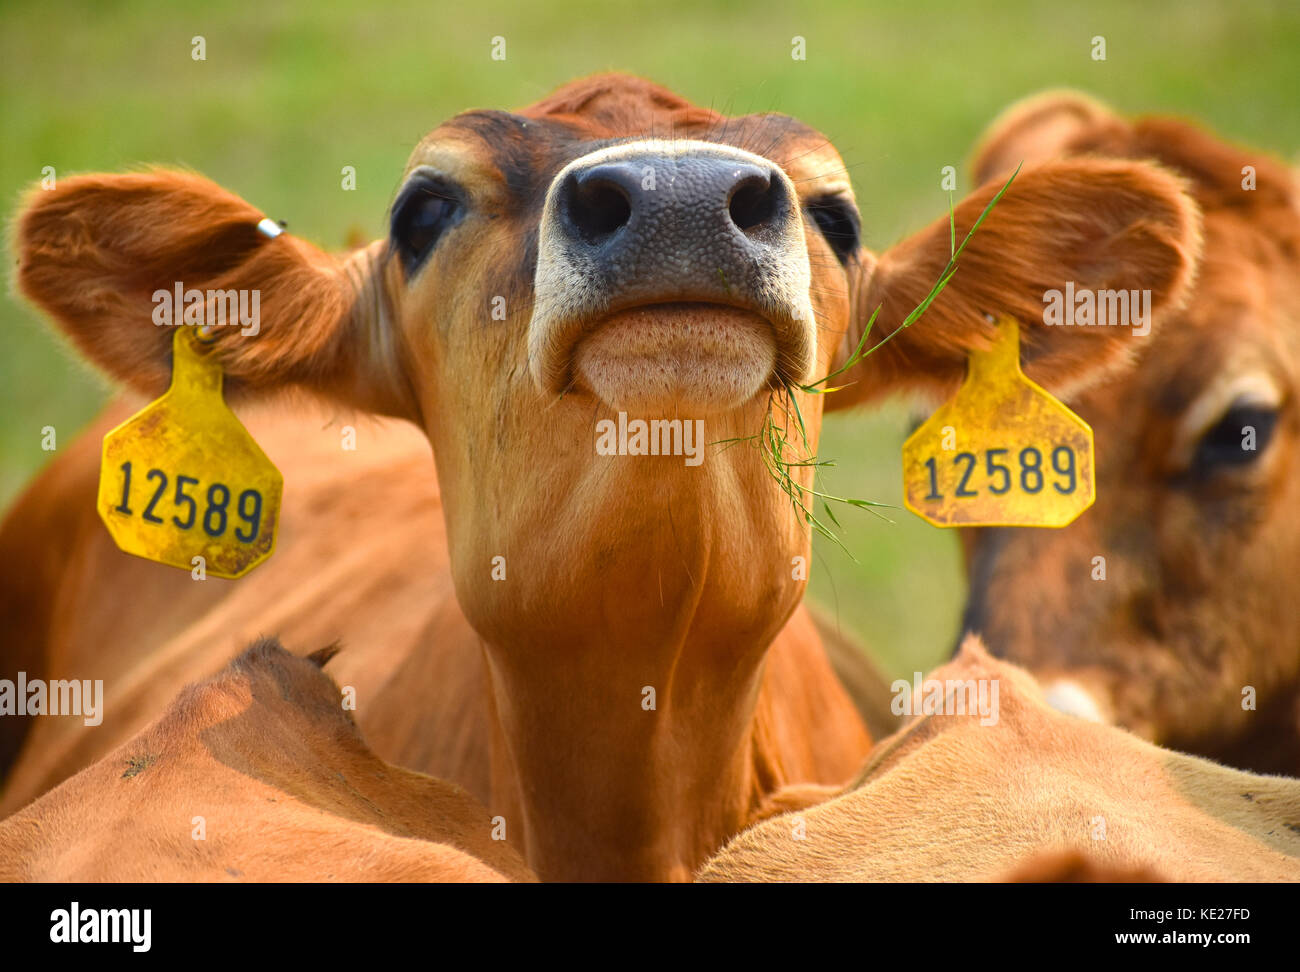 Mucca closeup con etichette di identificazione nelle orecchie. Foto Stock